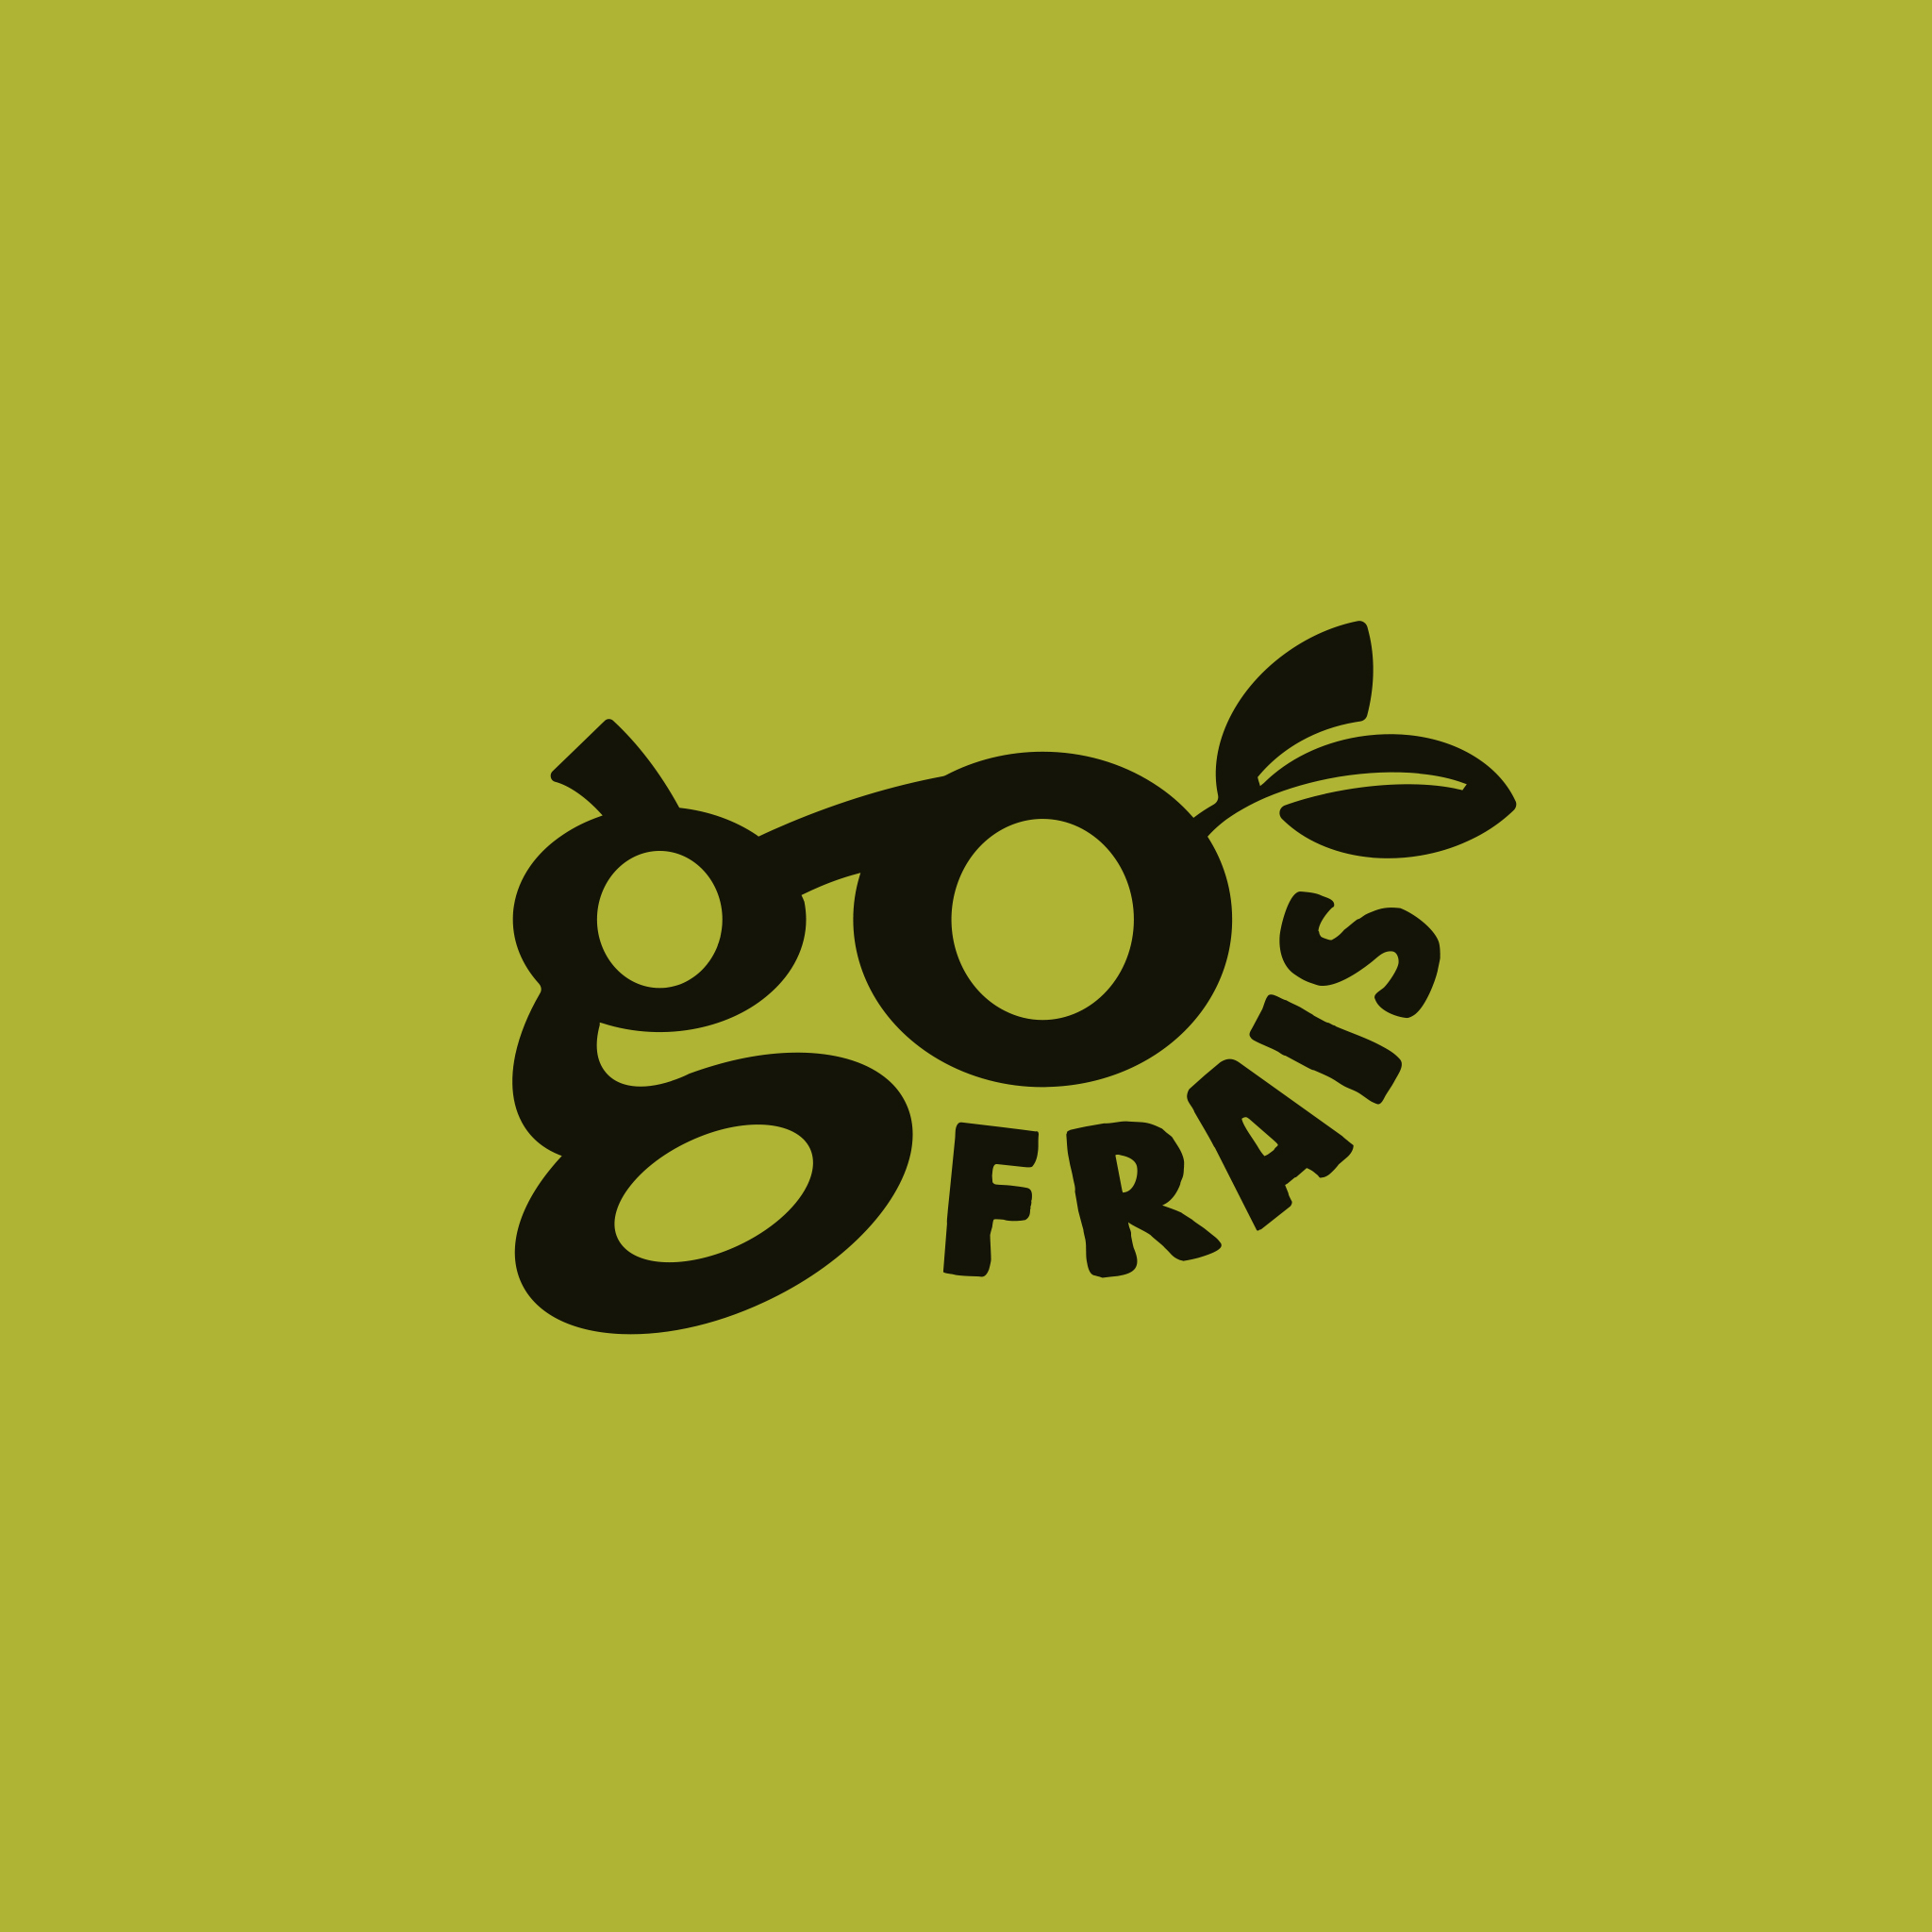 autograff-design-graphique-graphiste-toulouse-france-logo-go-frais-street-food-vert